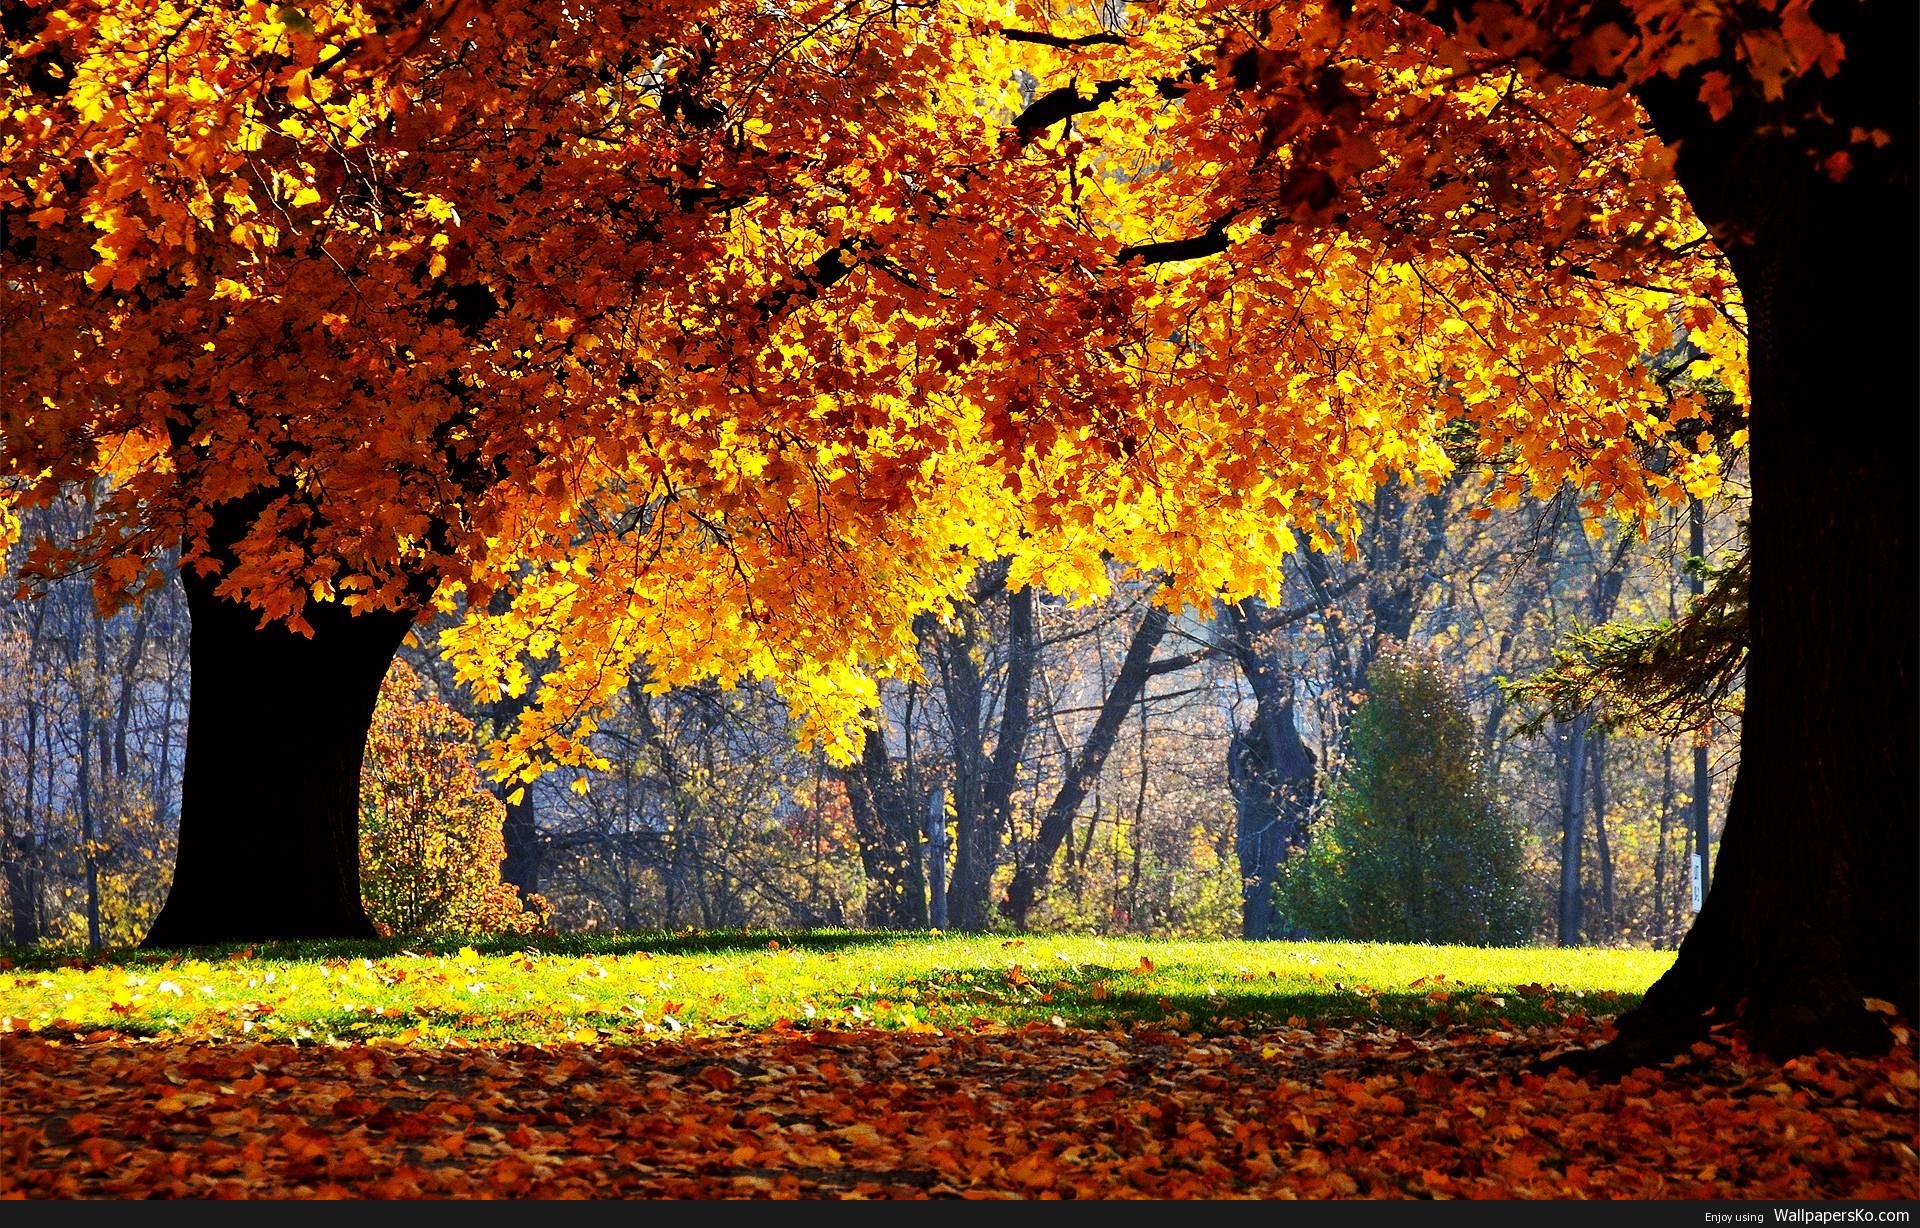 Autumn Wallpaper For Desktops